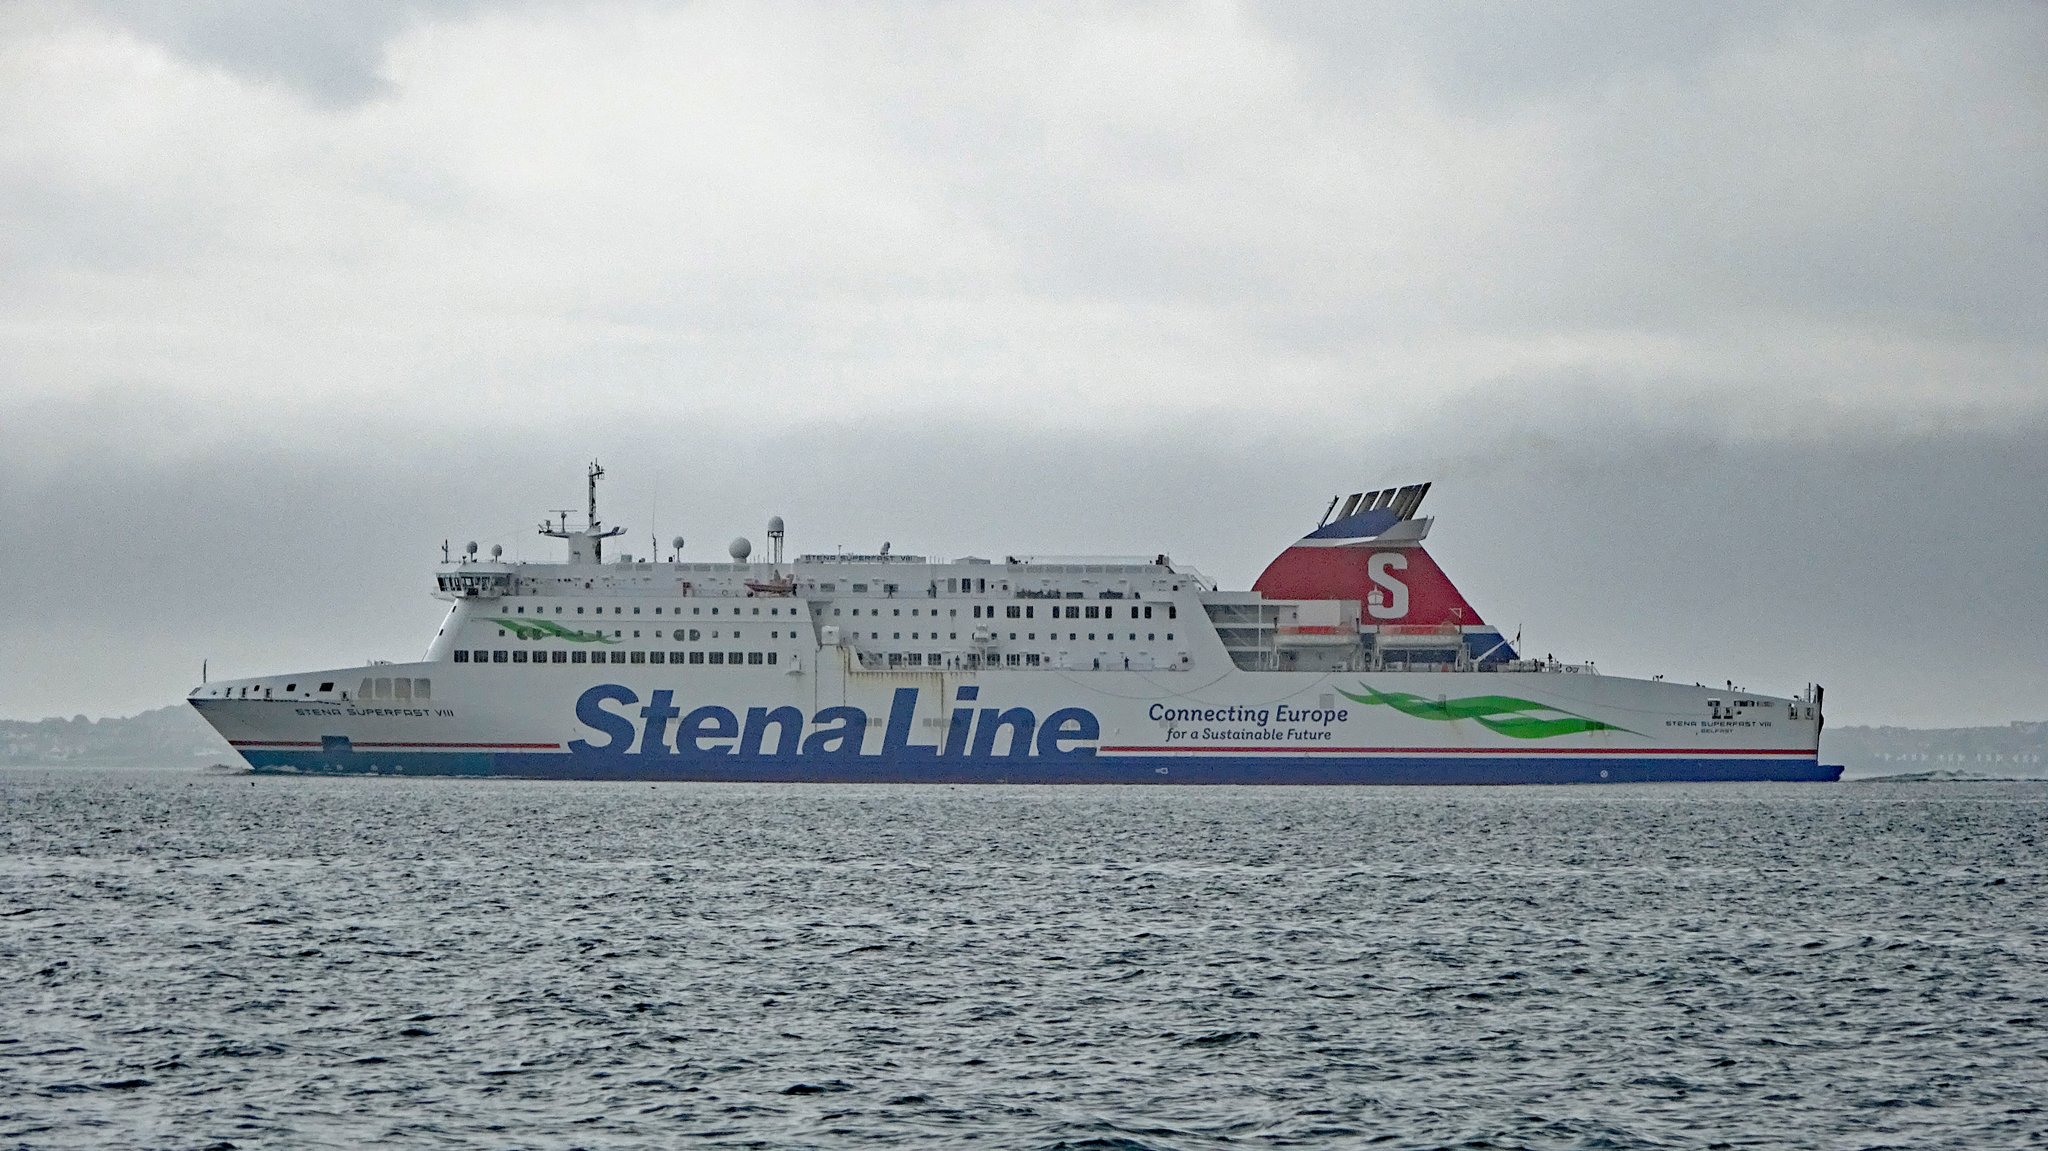 Stenna-Line